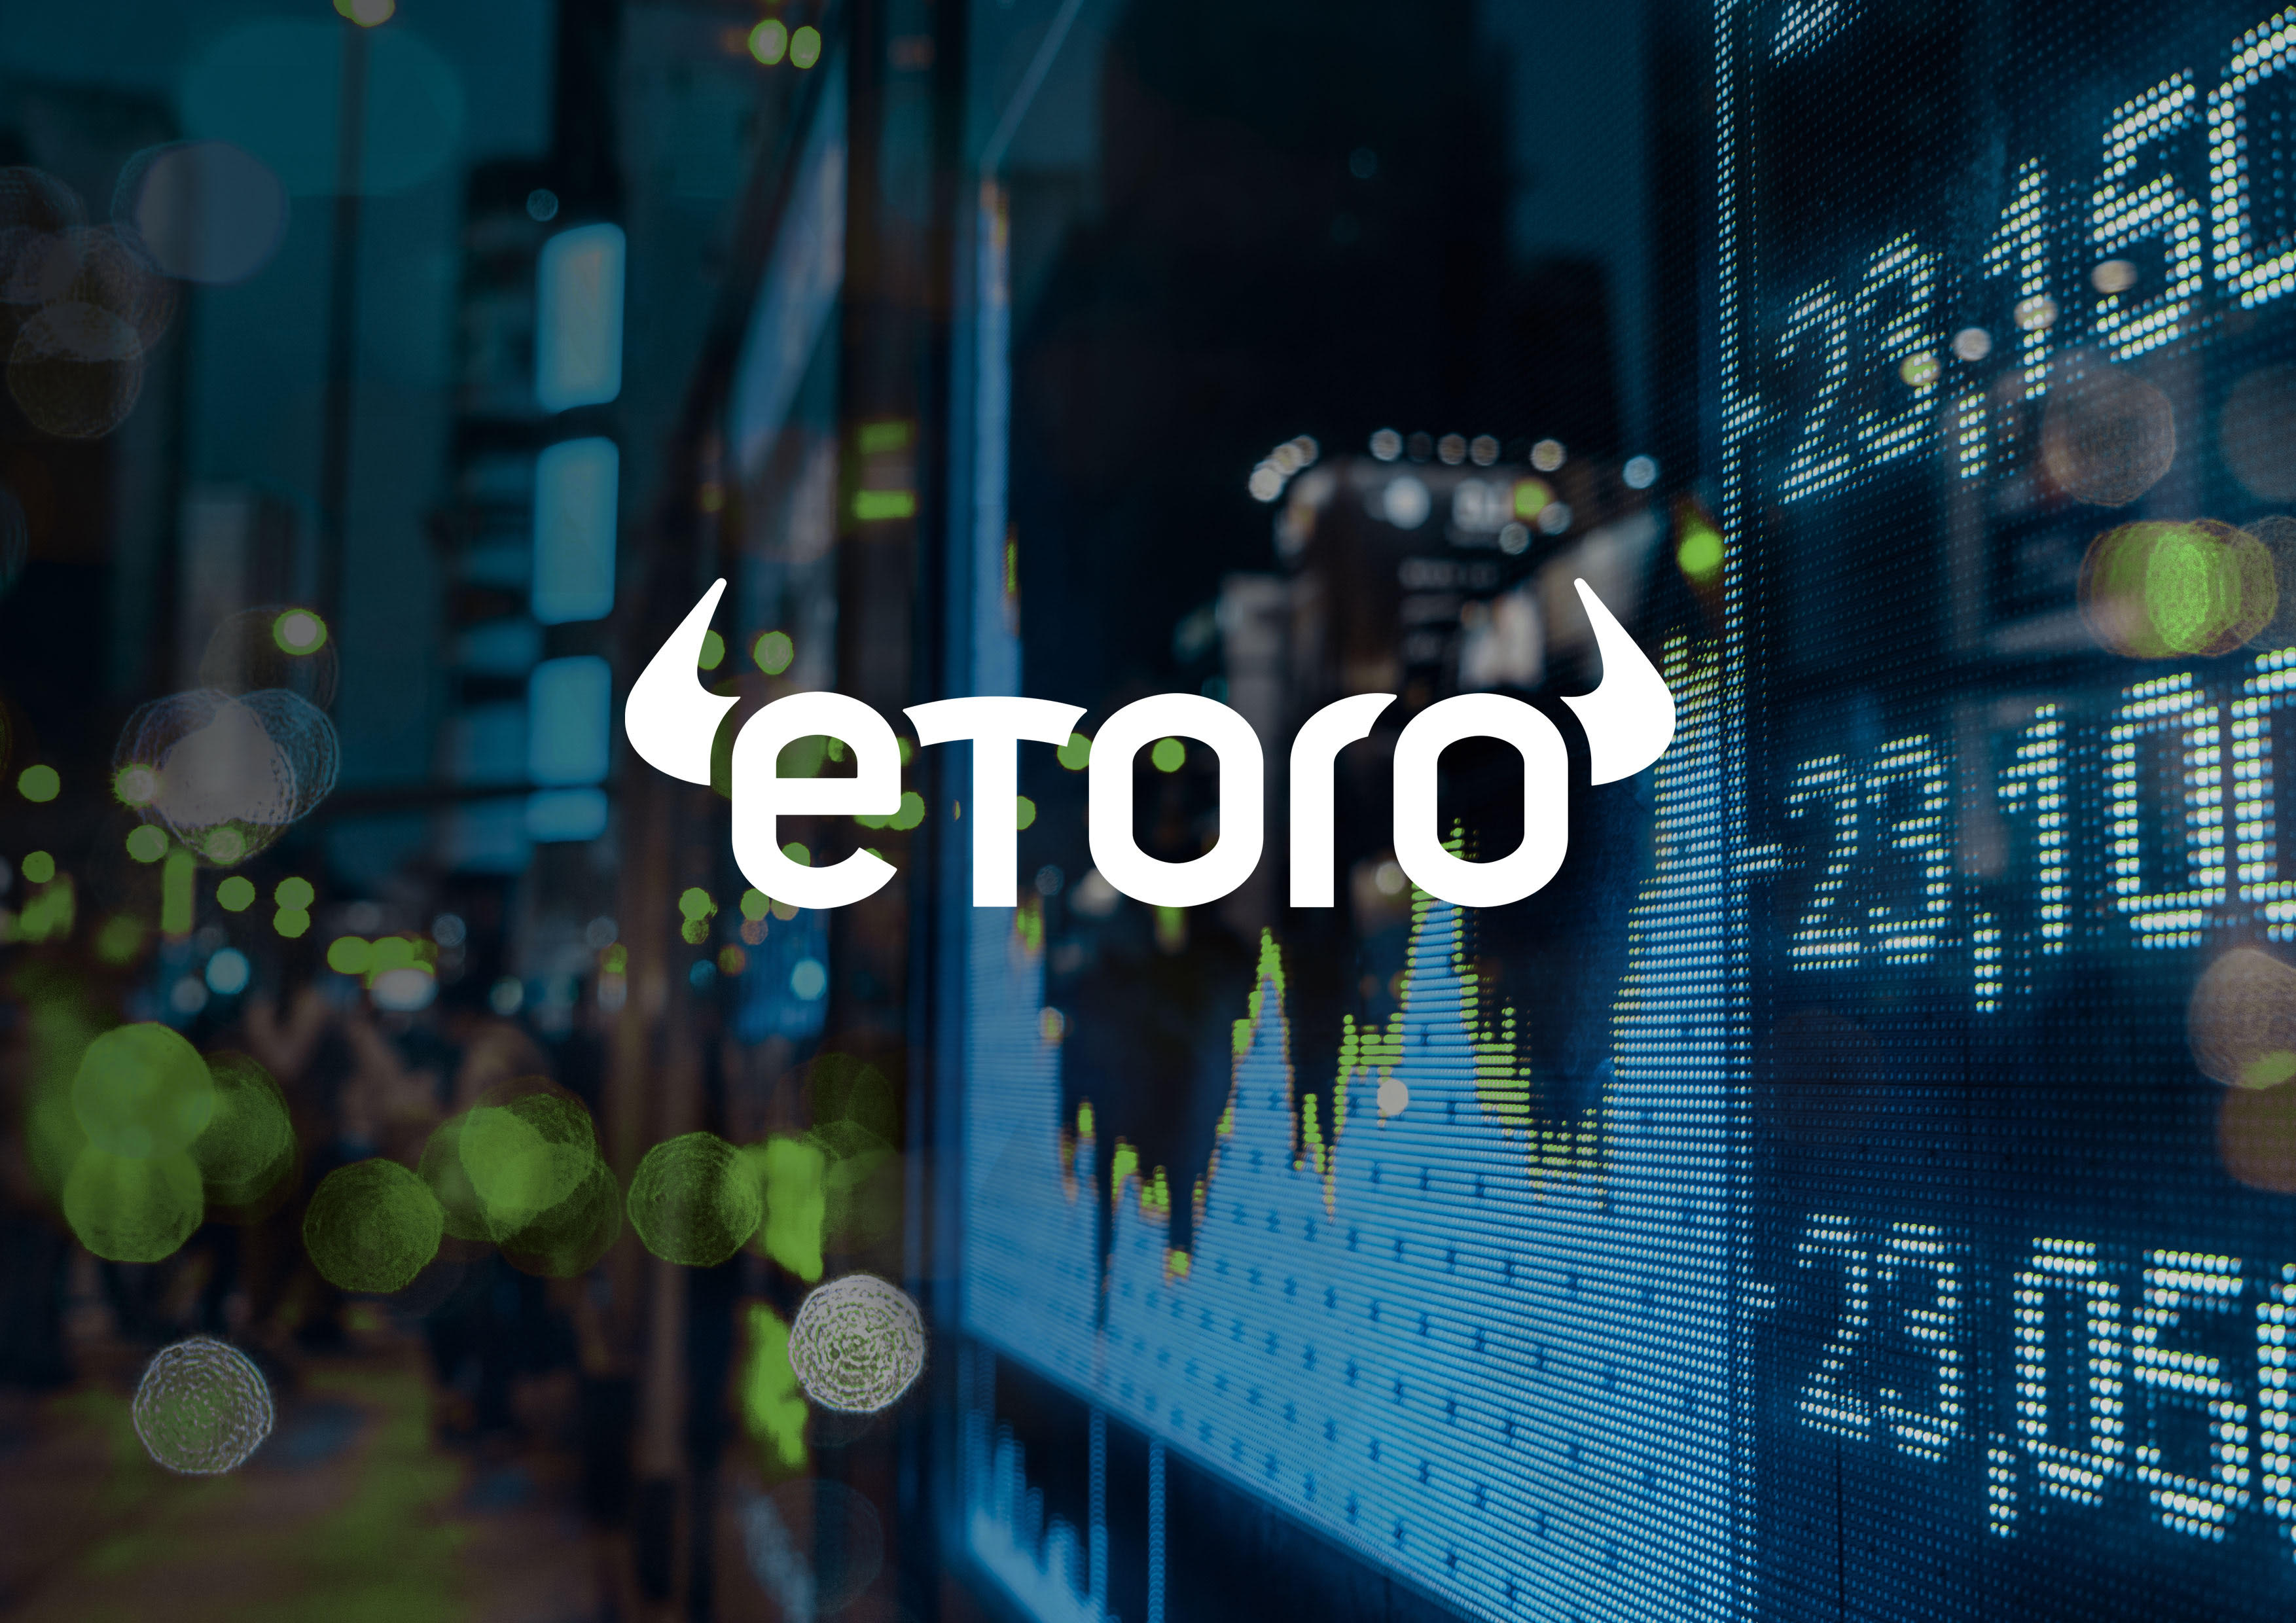 eToro Logo